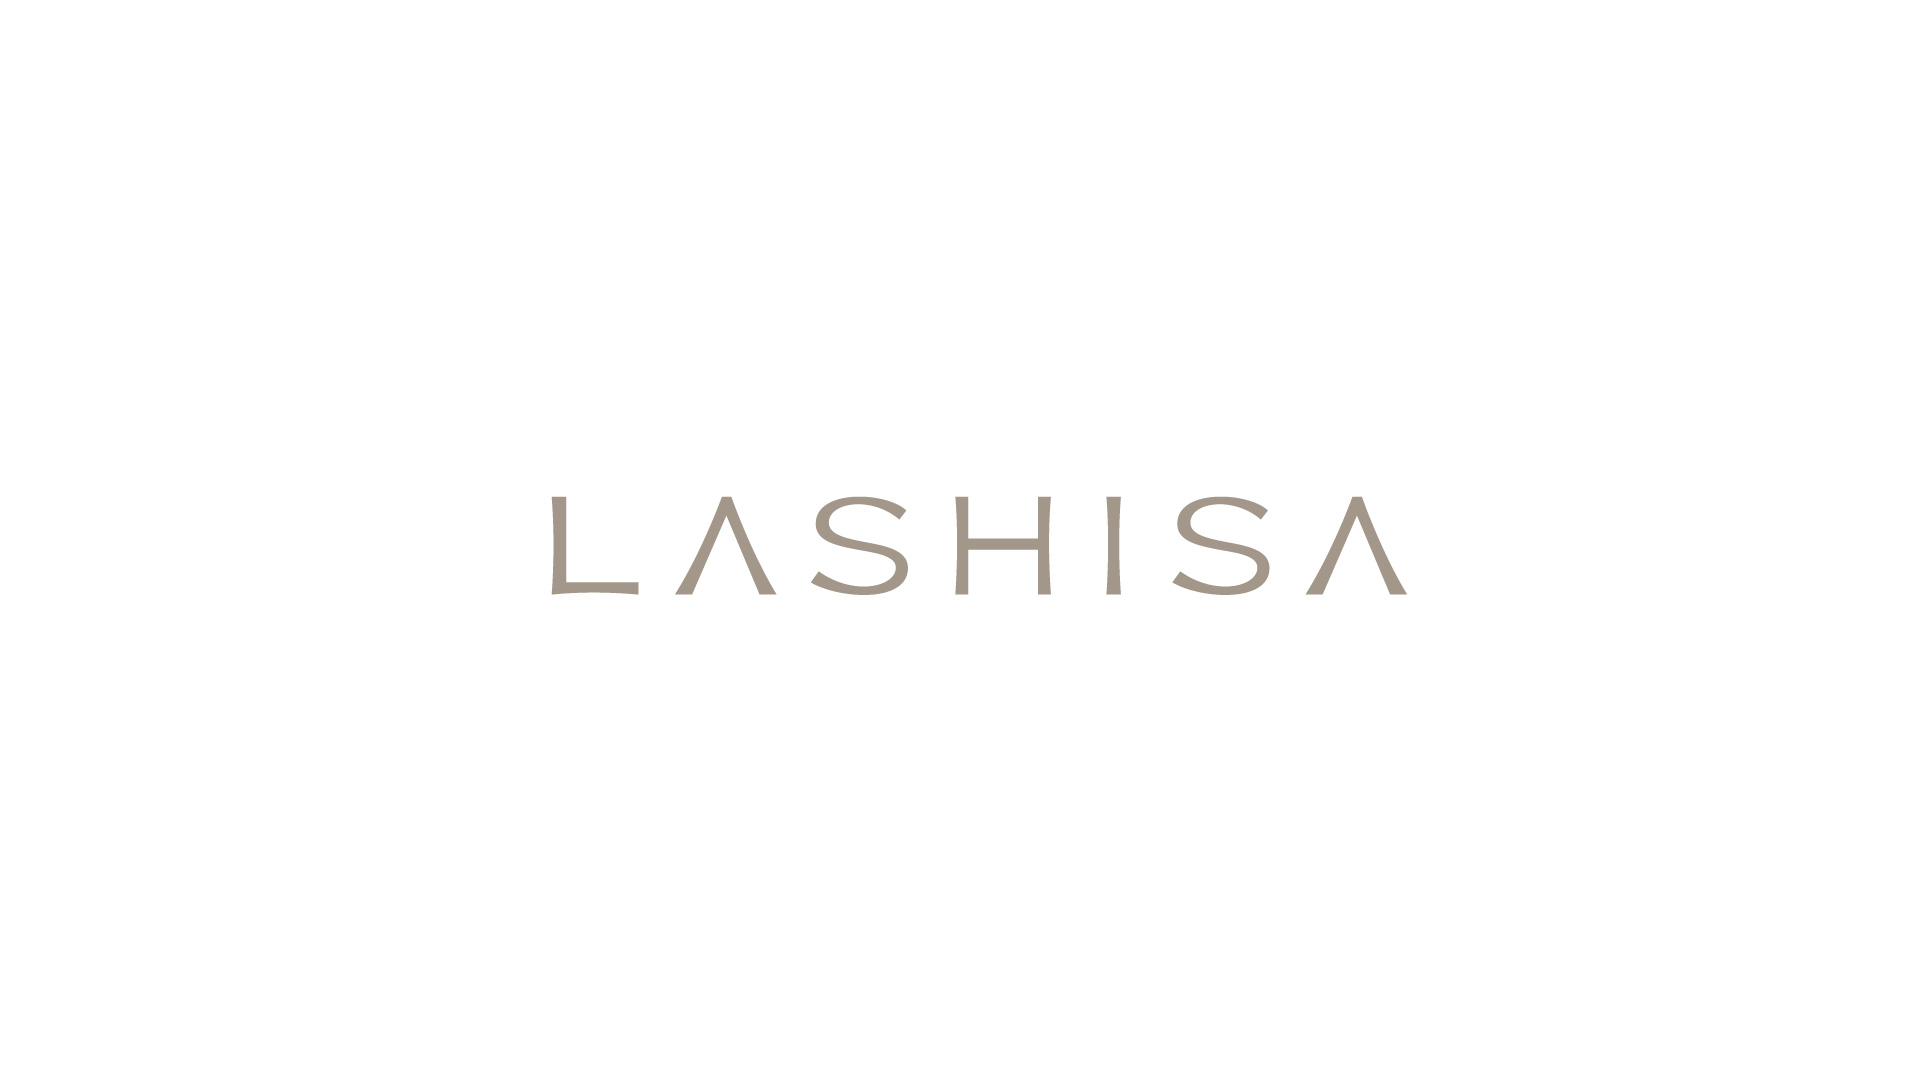 LASHISA